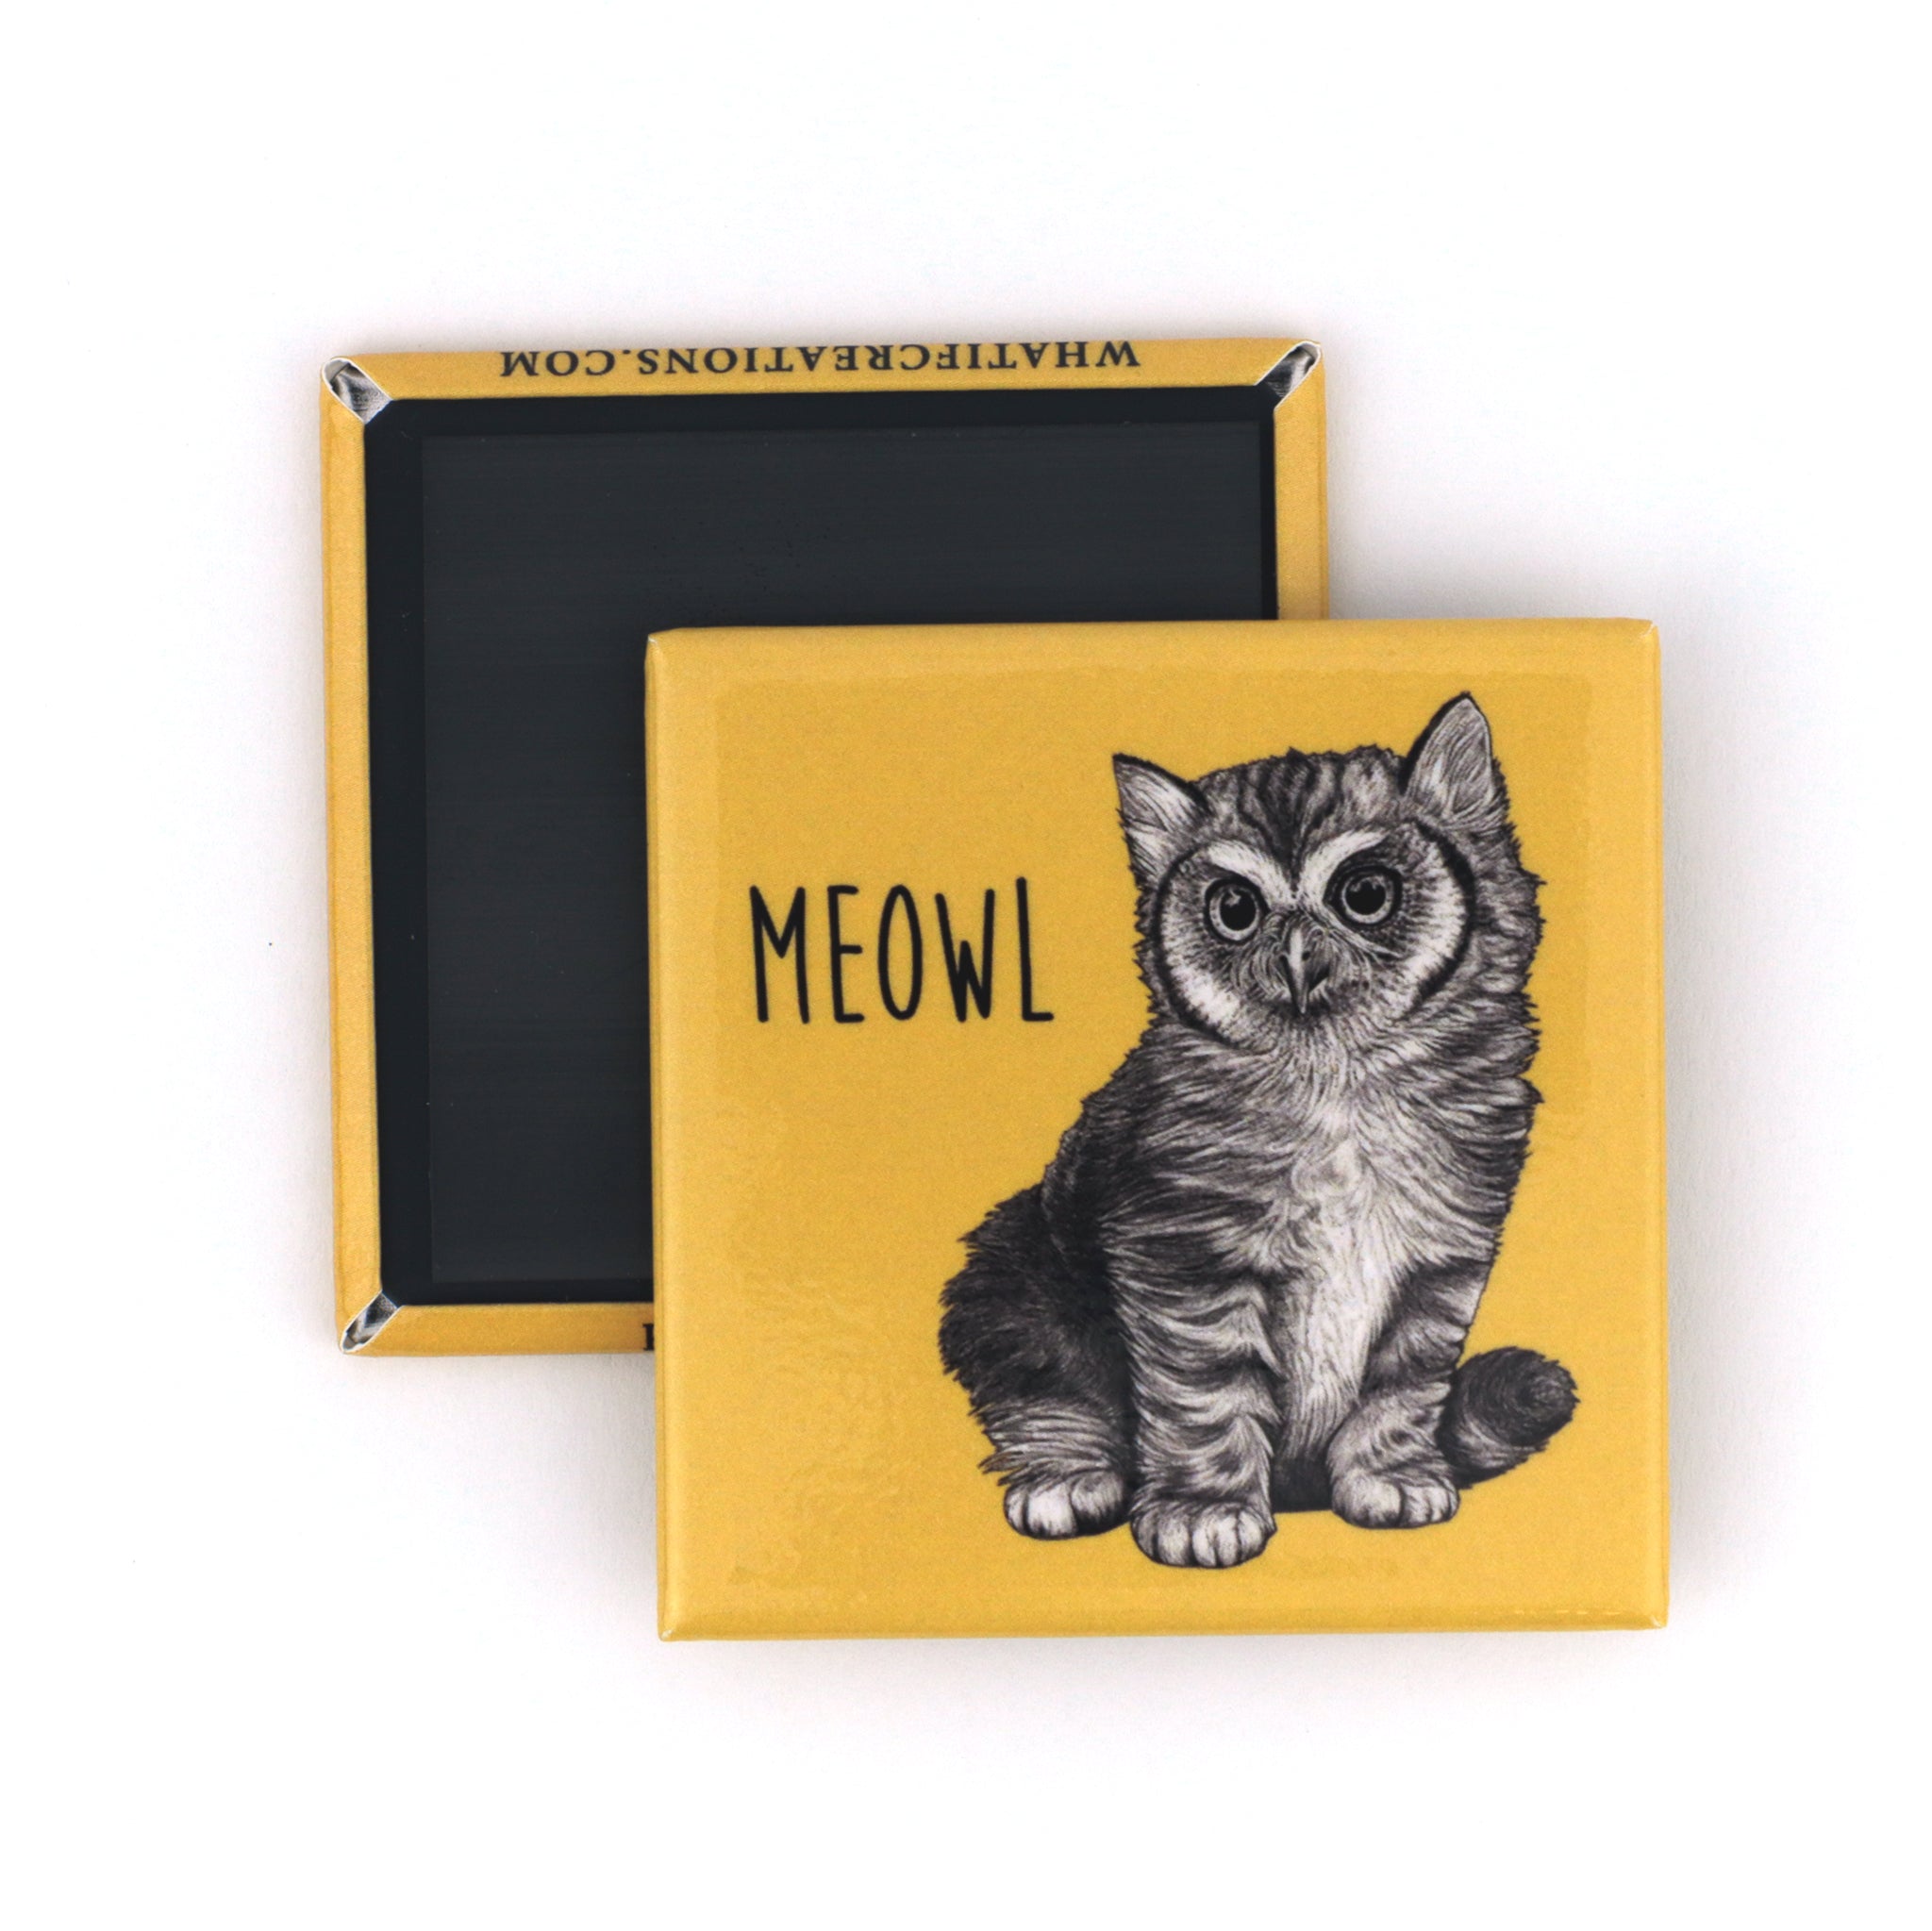 Meowl 2" Fridge Magnet